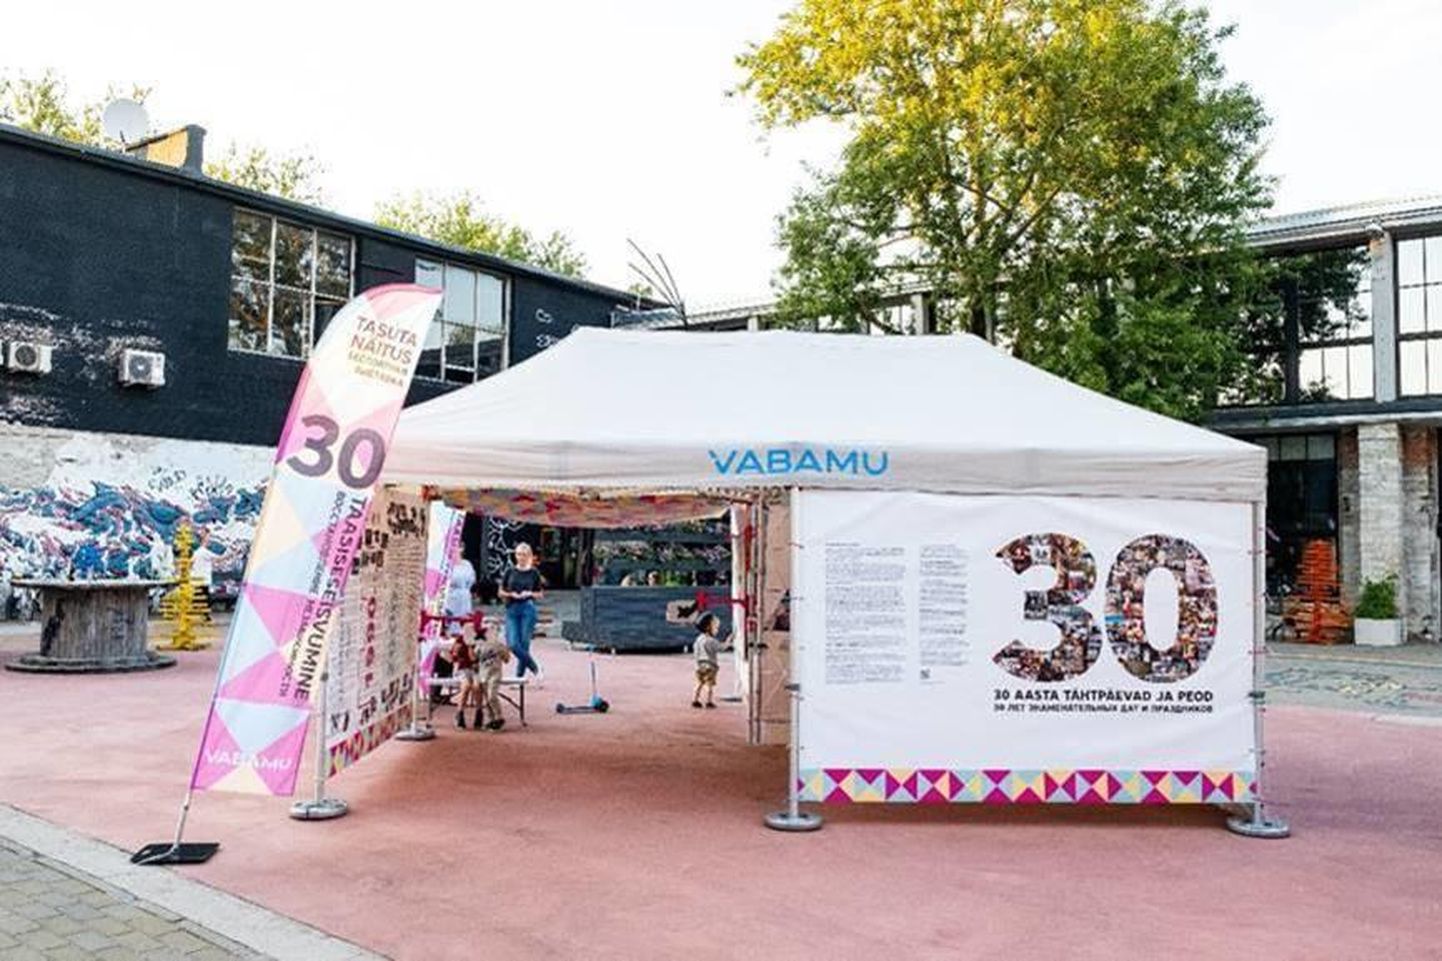 Vabamu rändnäitus on pühendatud Eesti taasiseseisvumise 30. aastapäevale